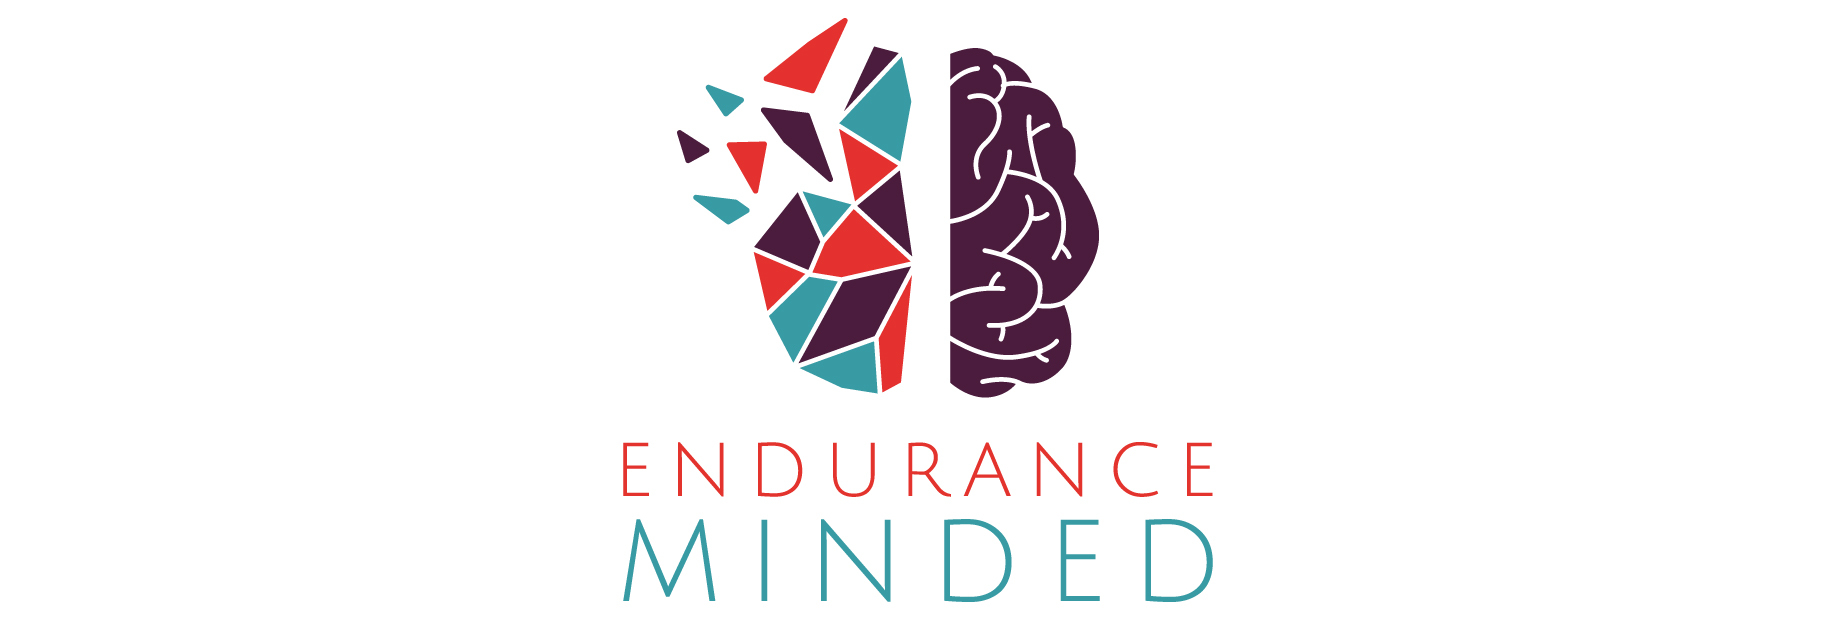 Endurance Minded header image 1